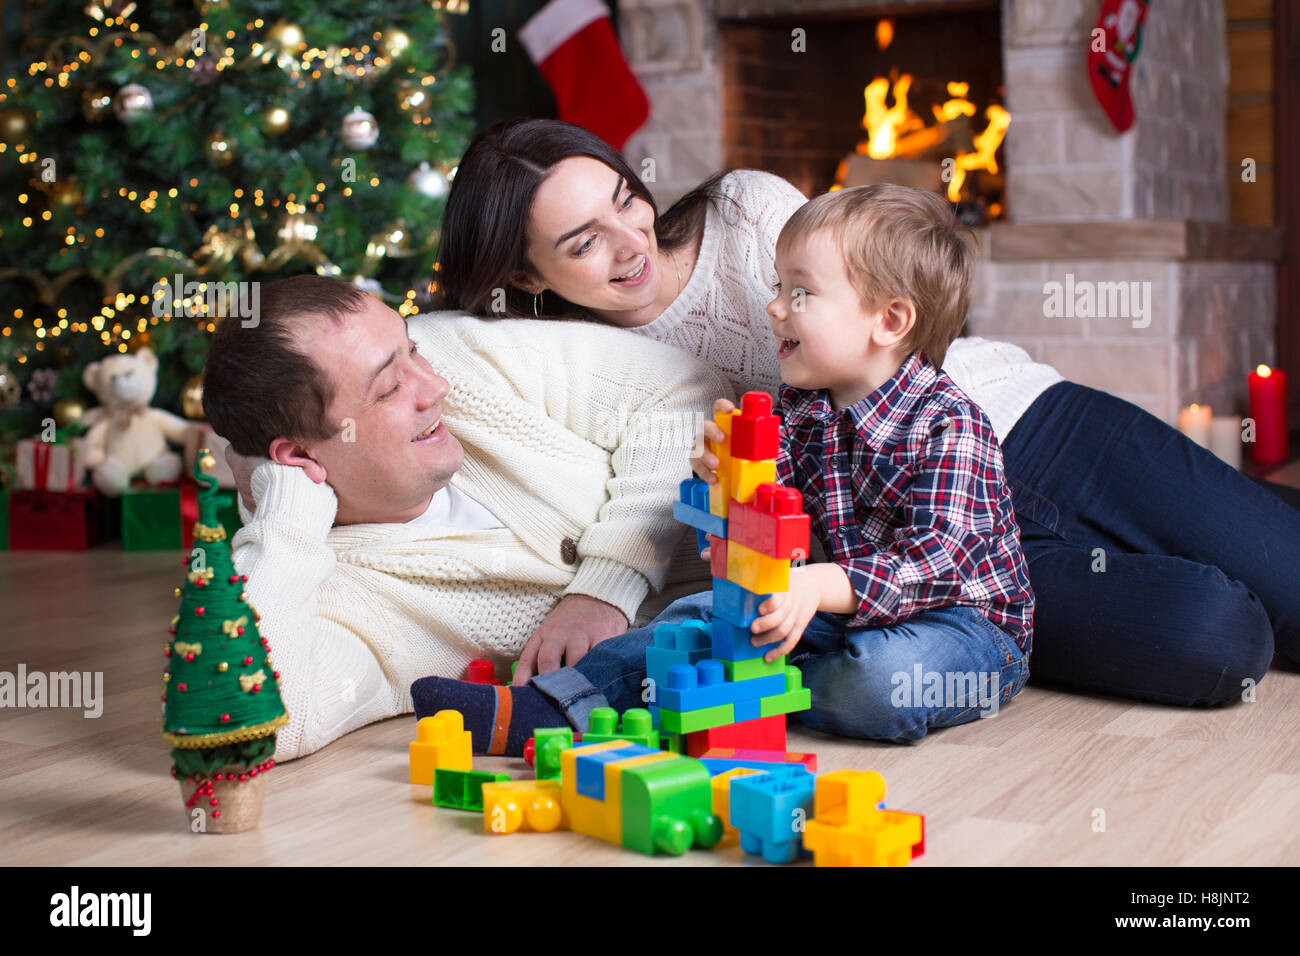 Ragazzo del bambino e i suoi genitori a giocare con i giocattoli di blocco sotto l'albero di natale Foto Stock